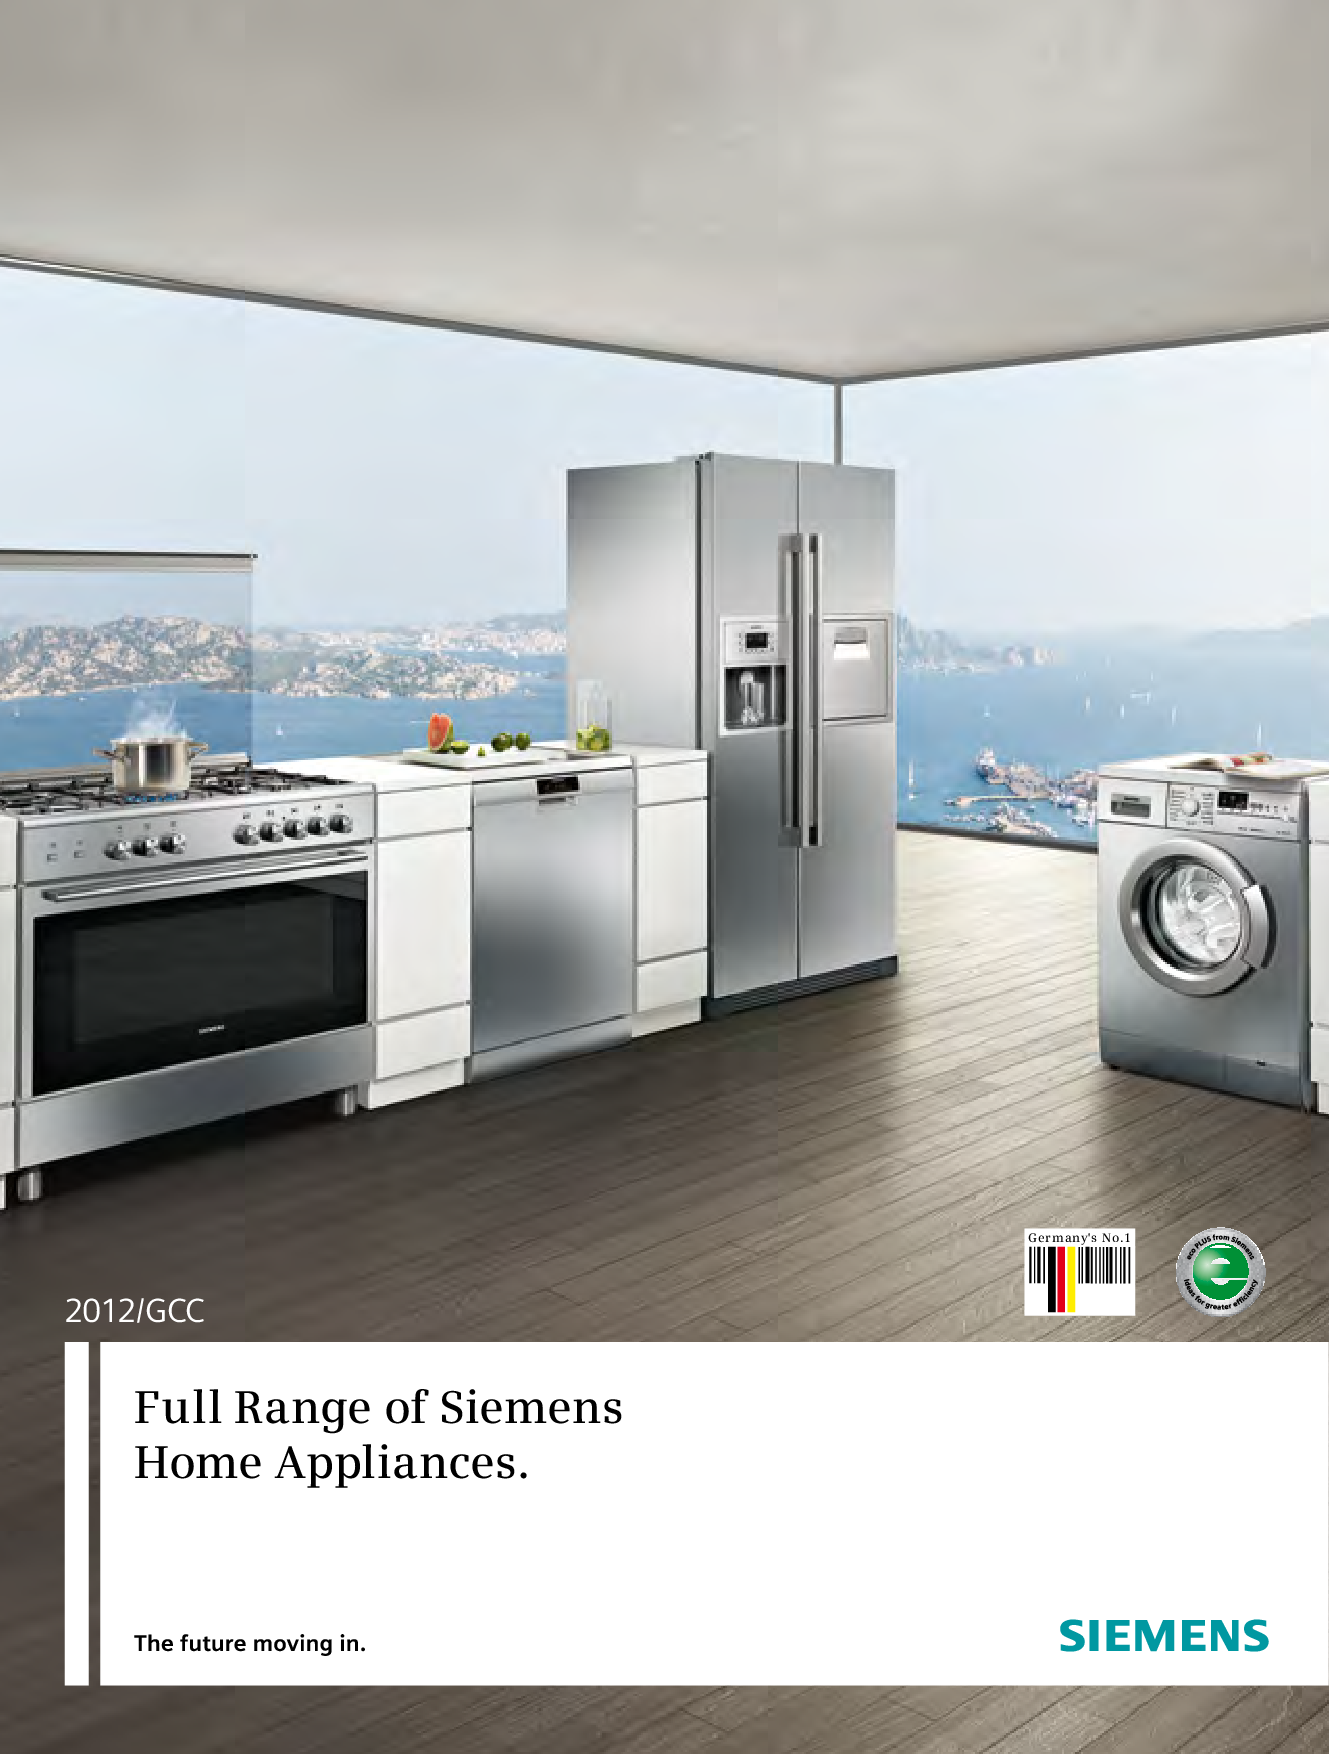 Siemens Appliance Trim Kit full range, 2012-gcc User Manual